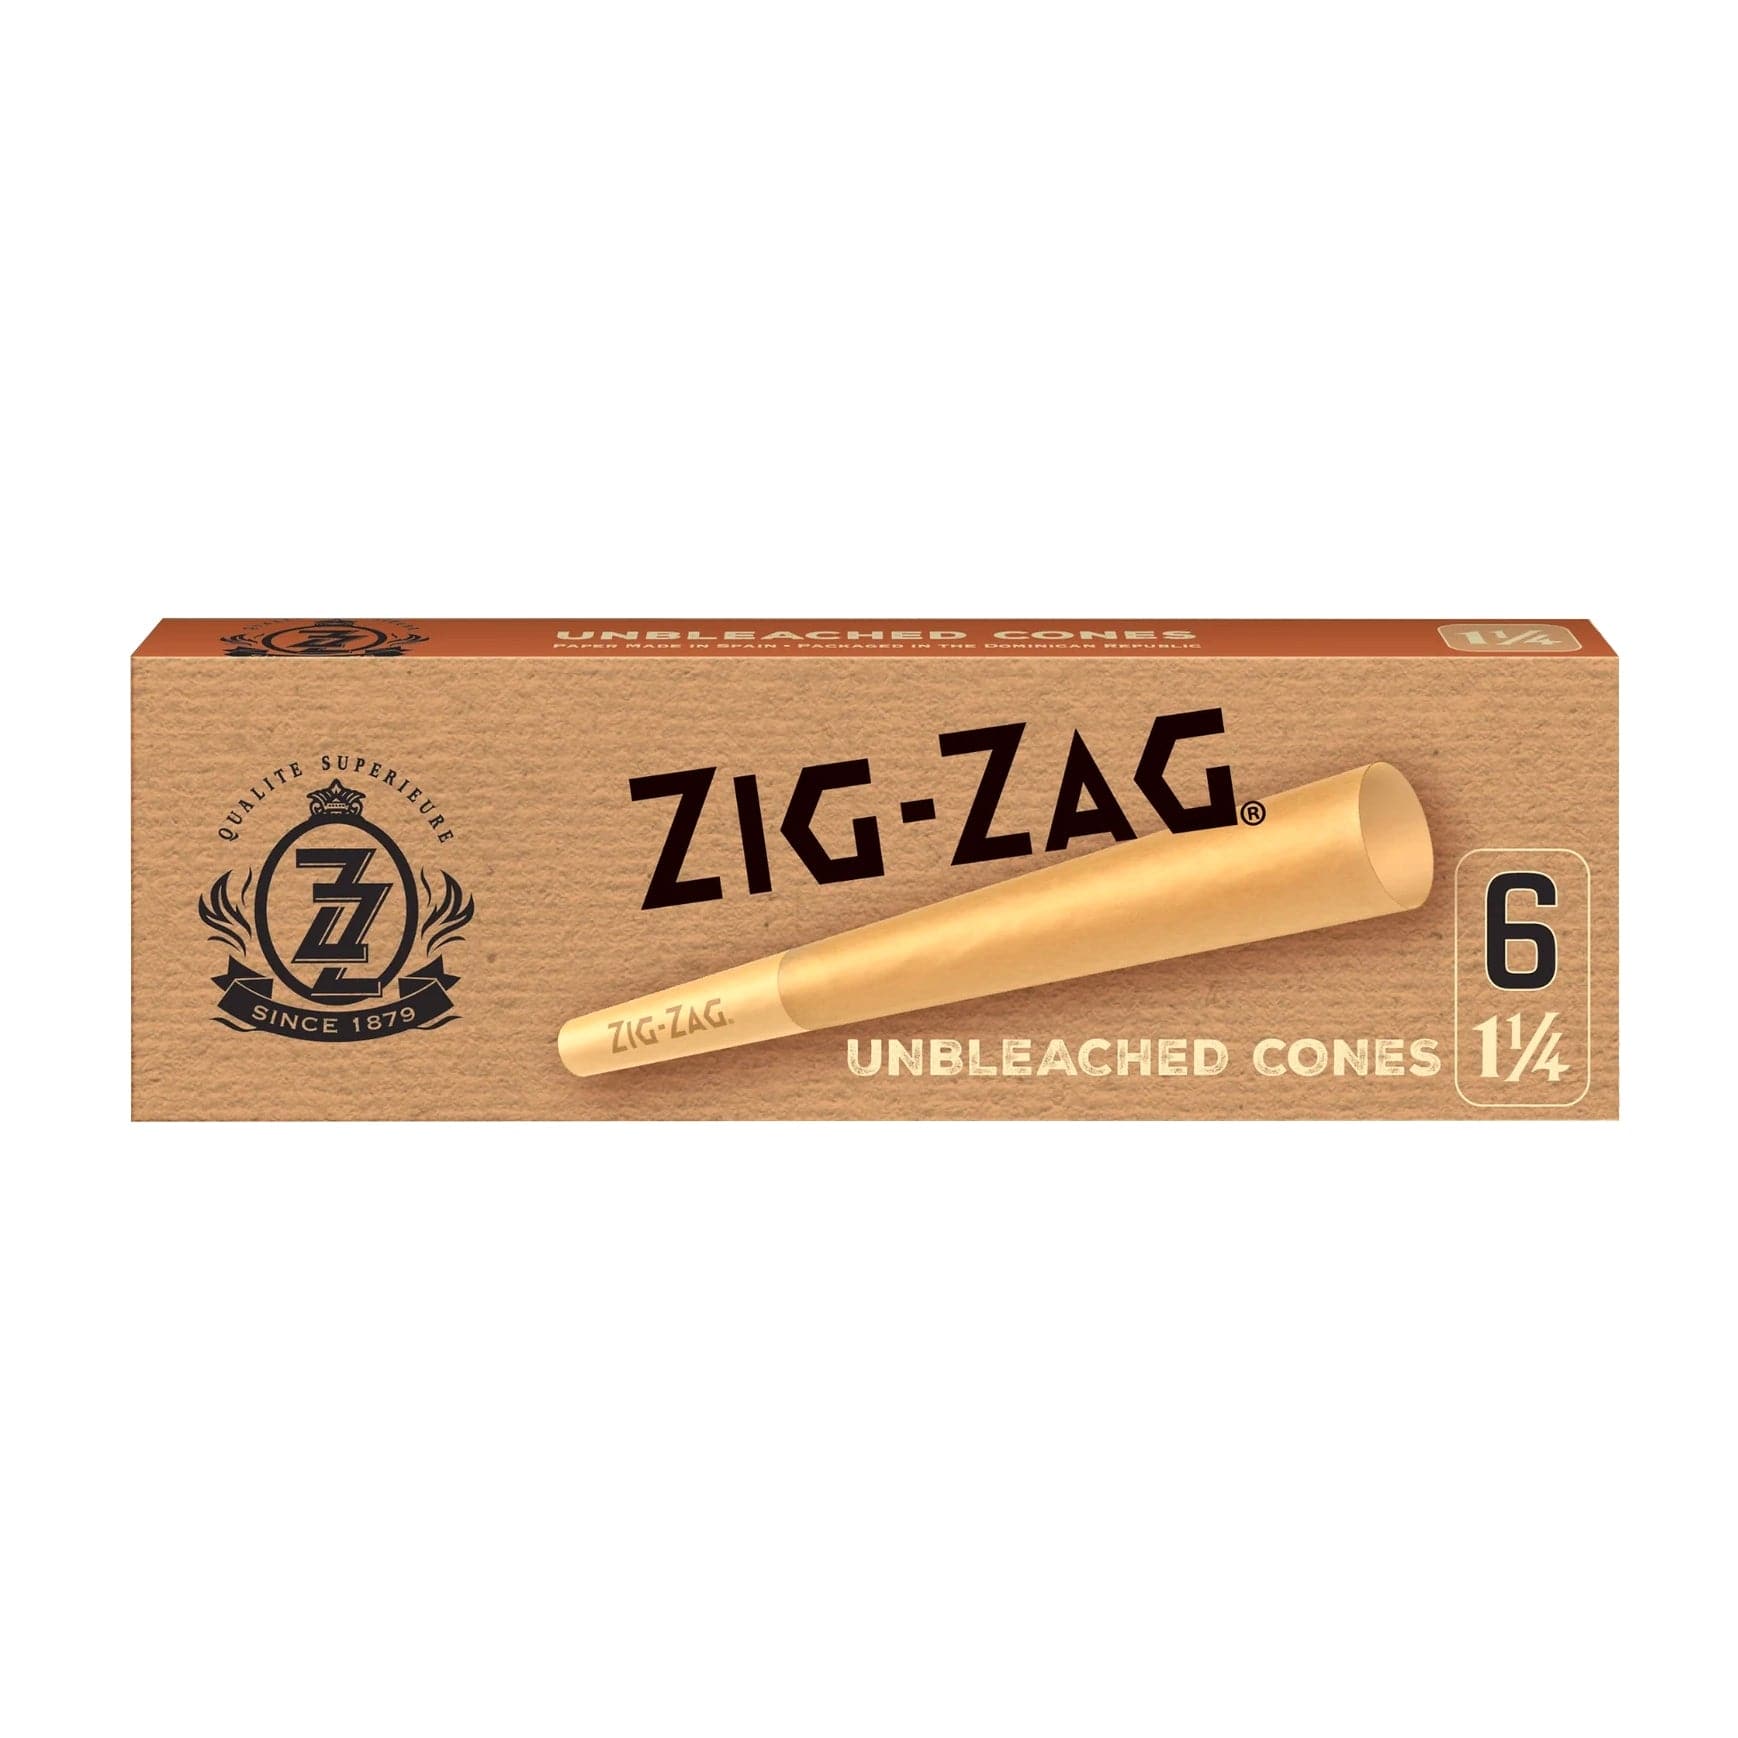 Zig Zag Each Cones